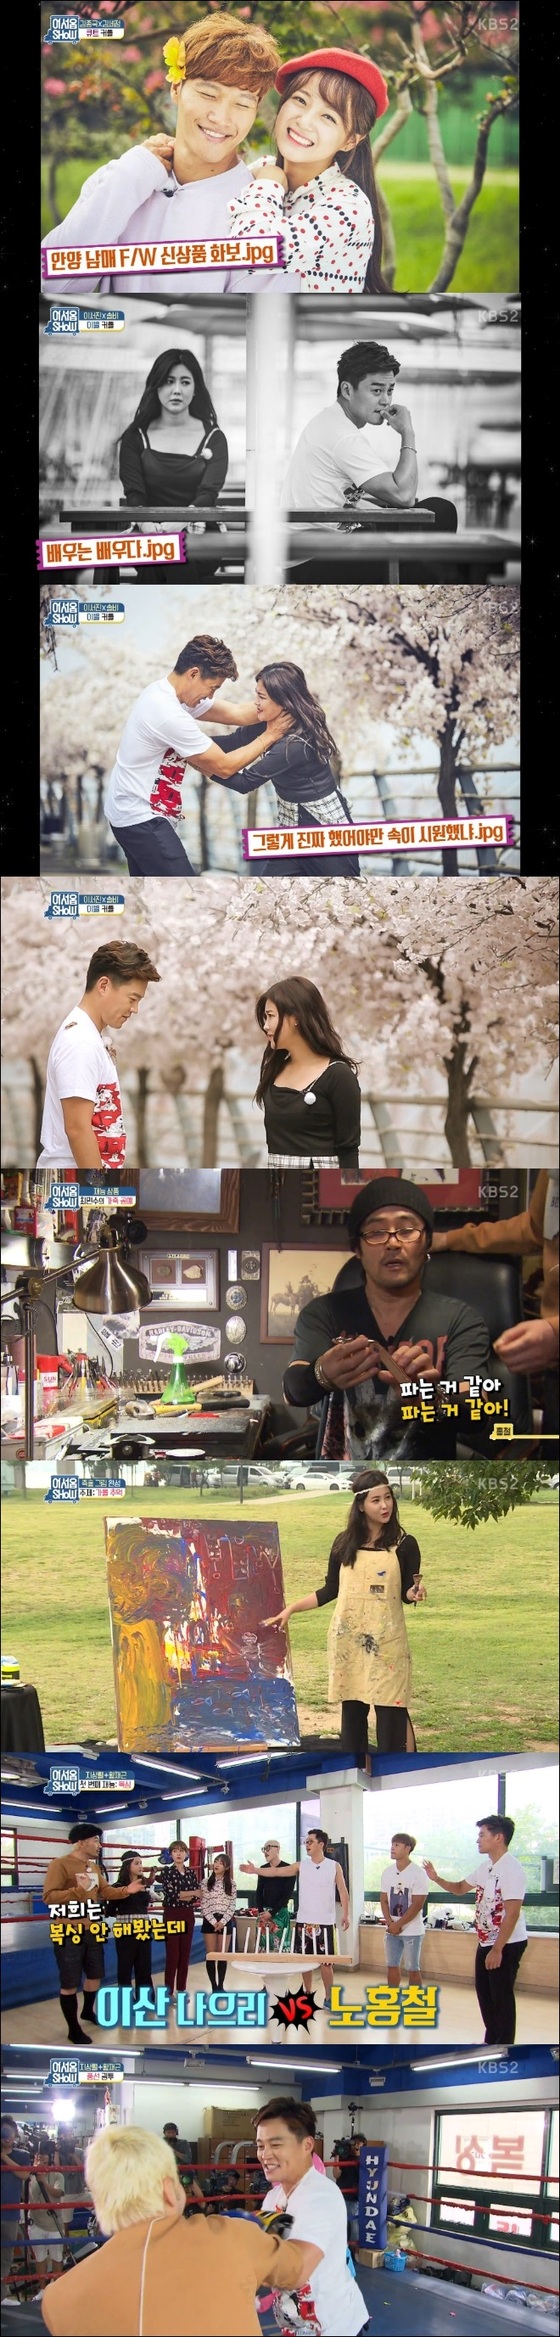 '어서옵쇼' 마지막 재능 기부자들이 호스트들과 만났다. © News1star / KBS2 '어서옵쇼' 캡처